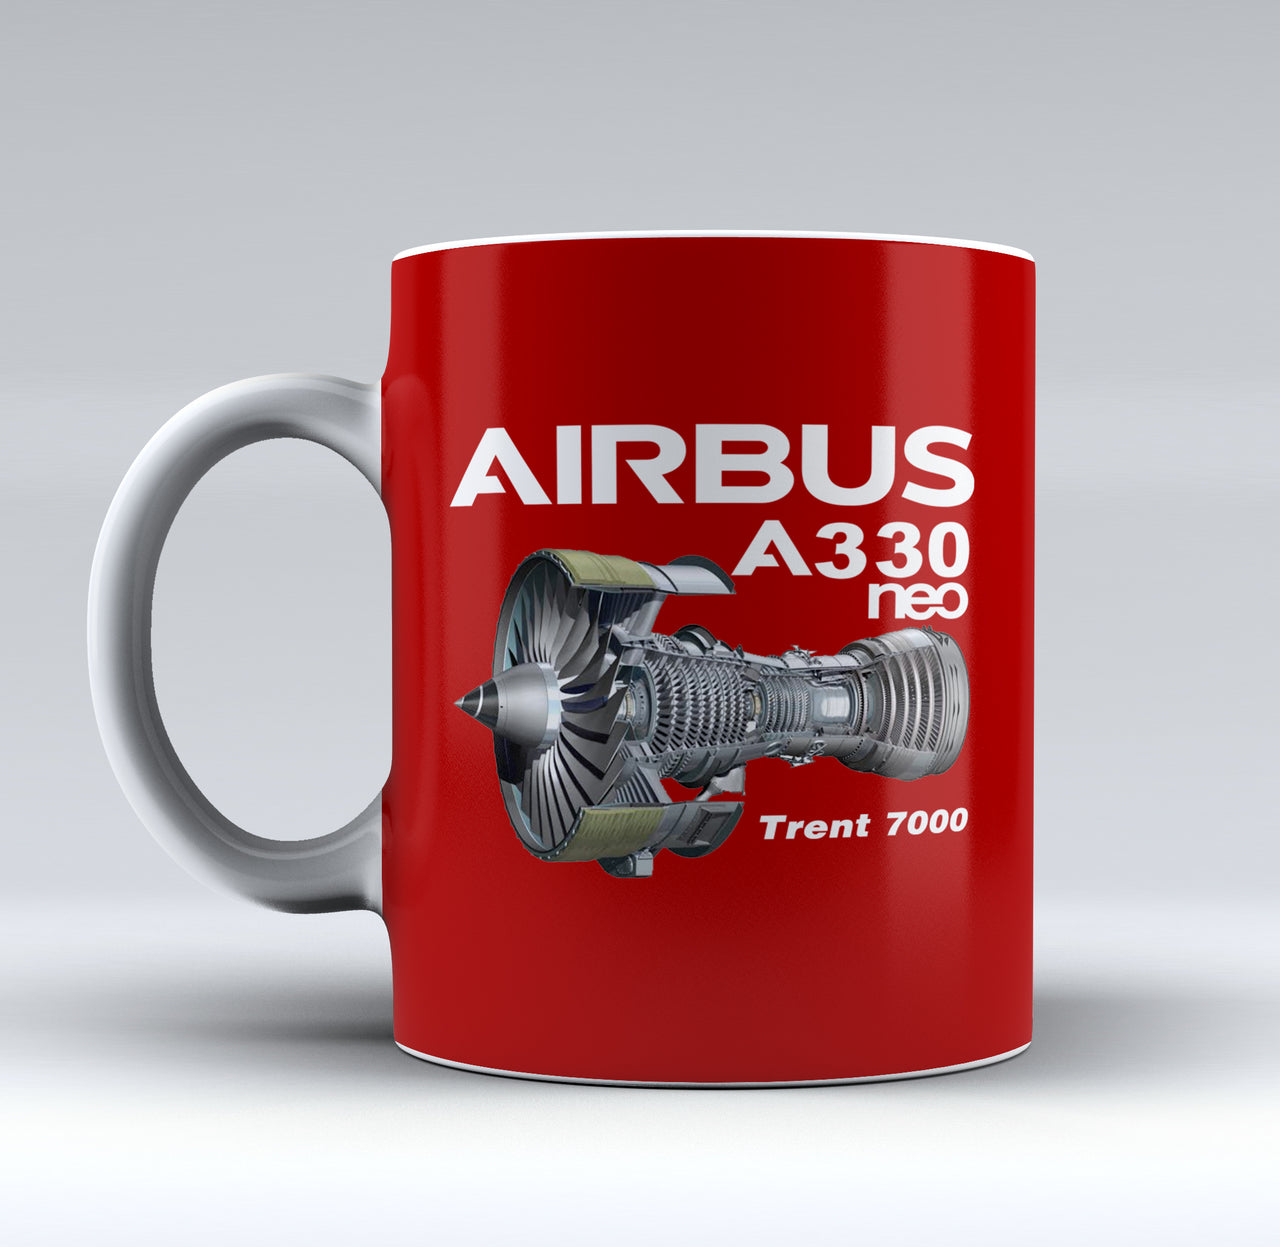 Airbus A330neo & Trent 7000 Engine Designed Mugs